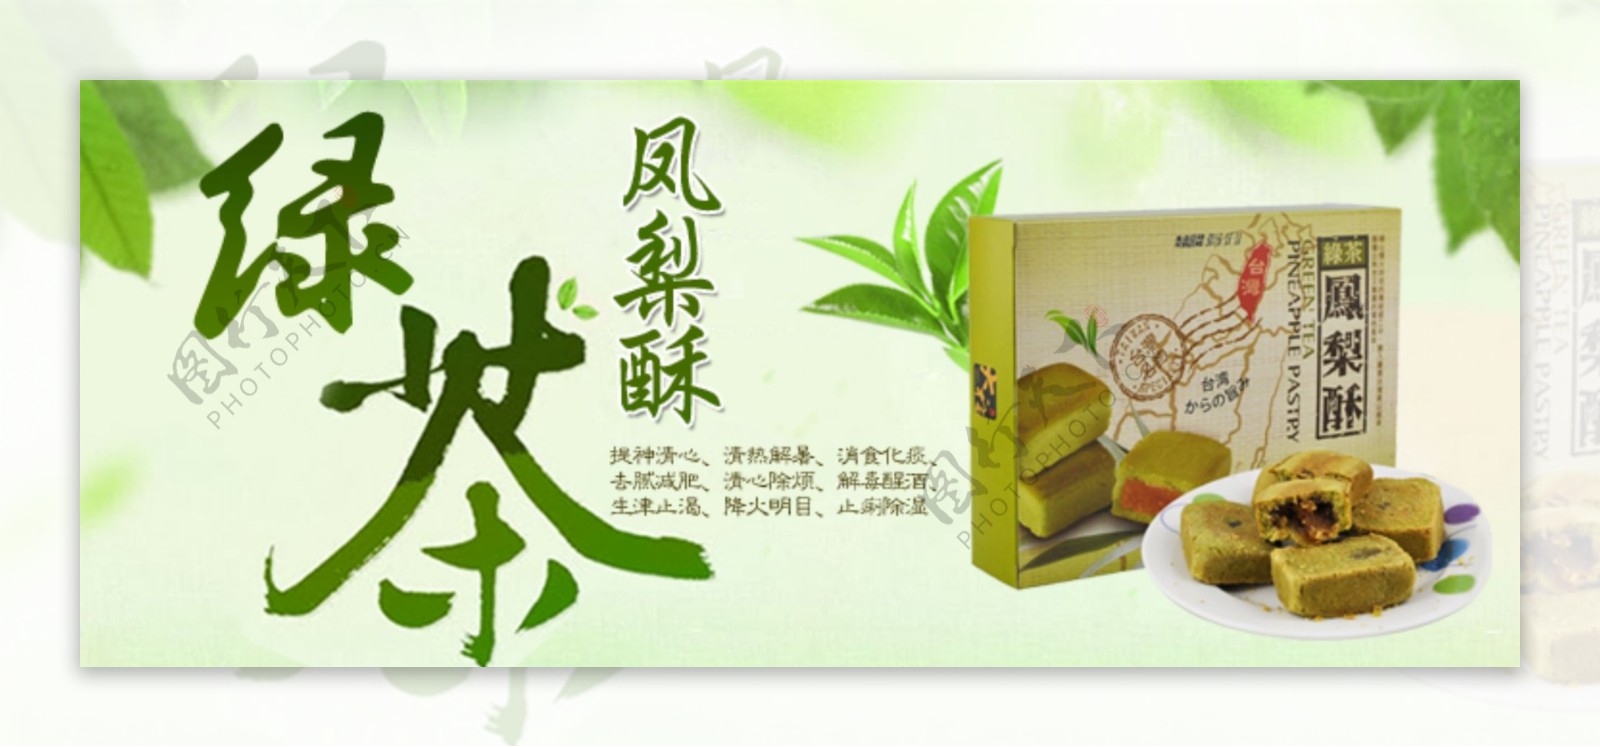 绿茶凤梨酥图片